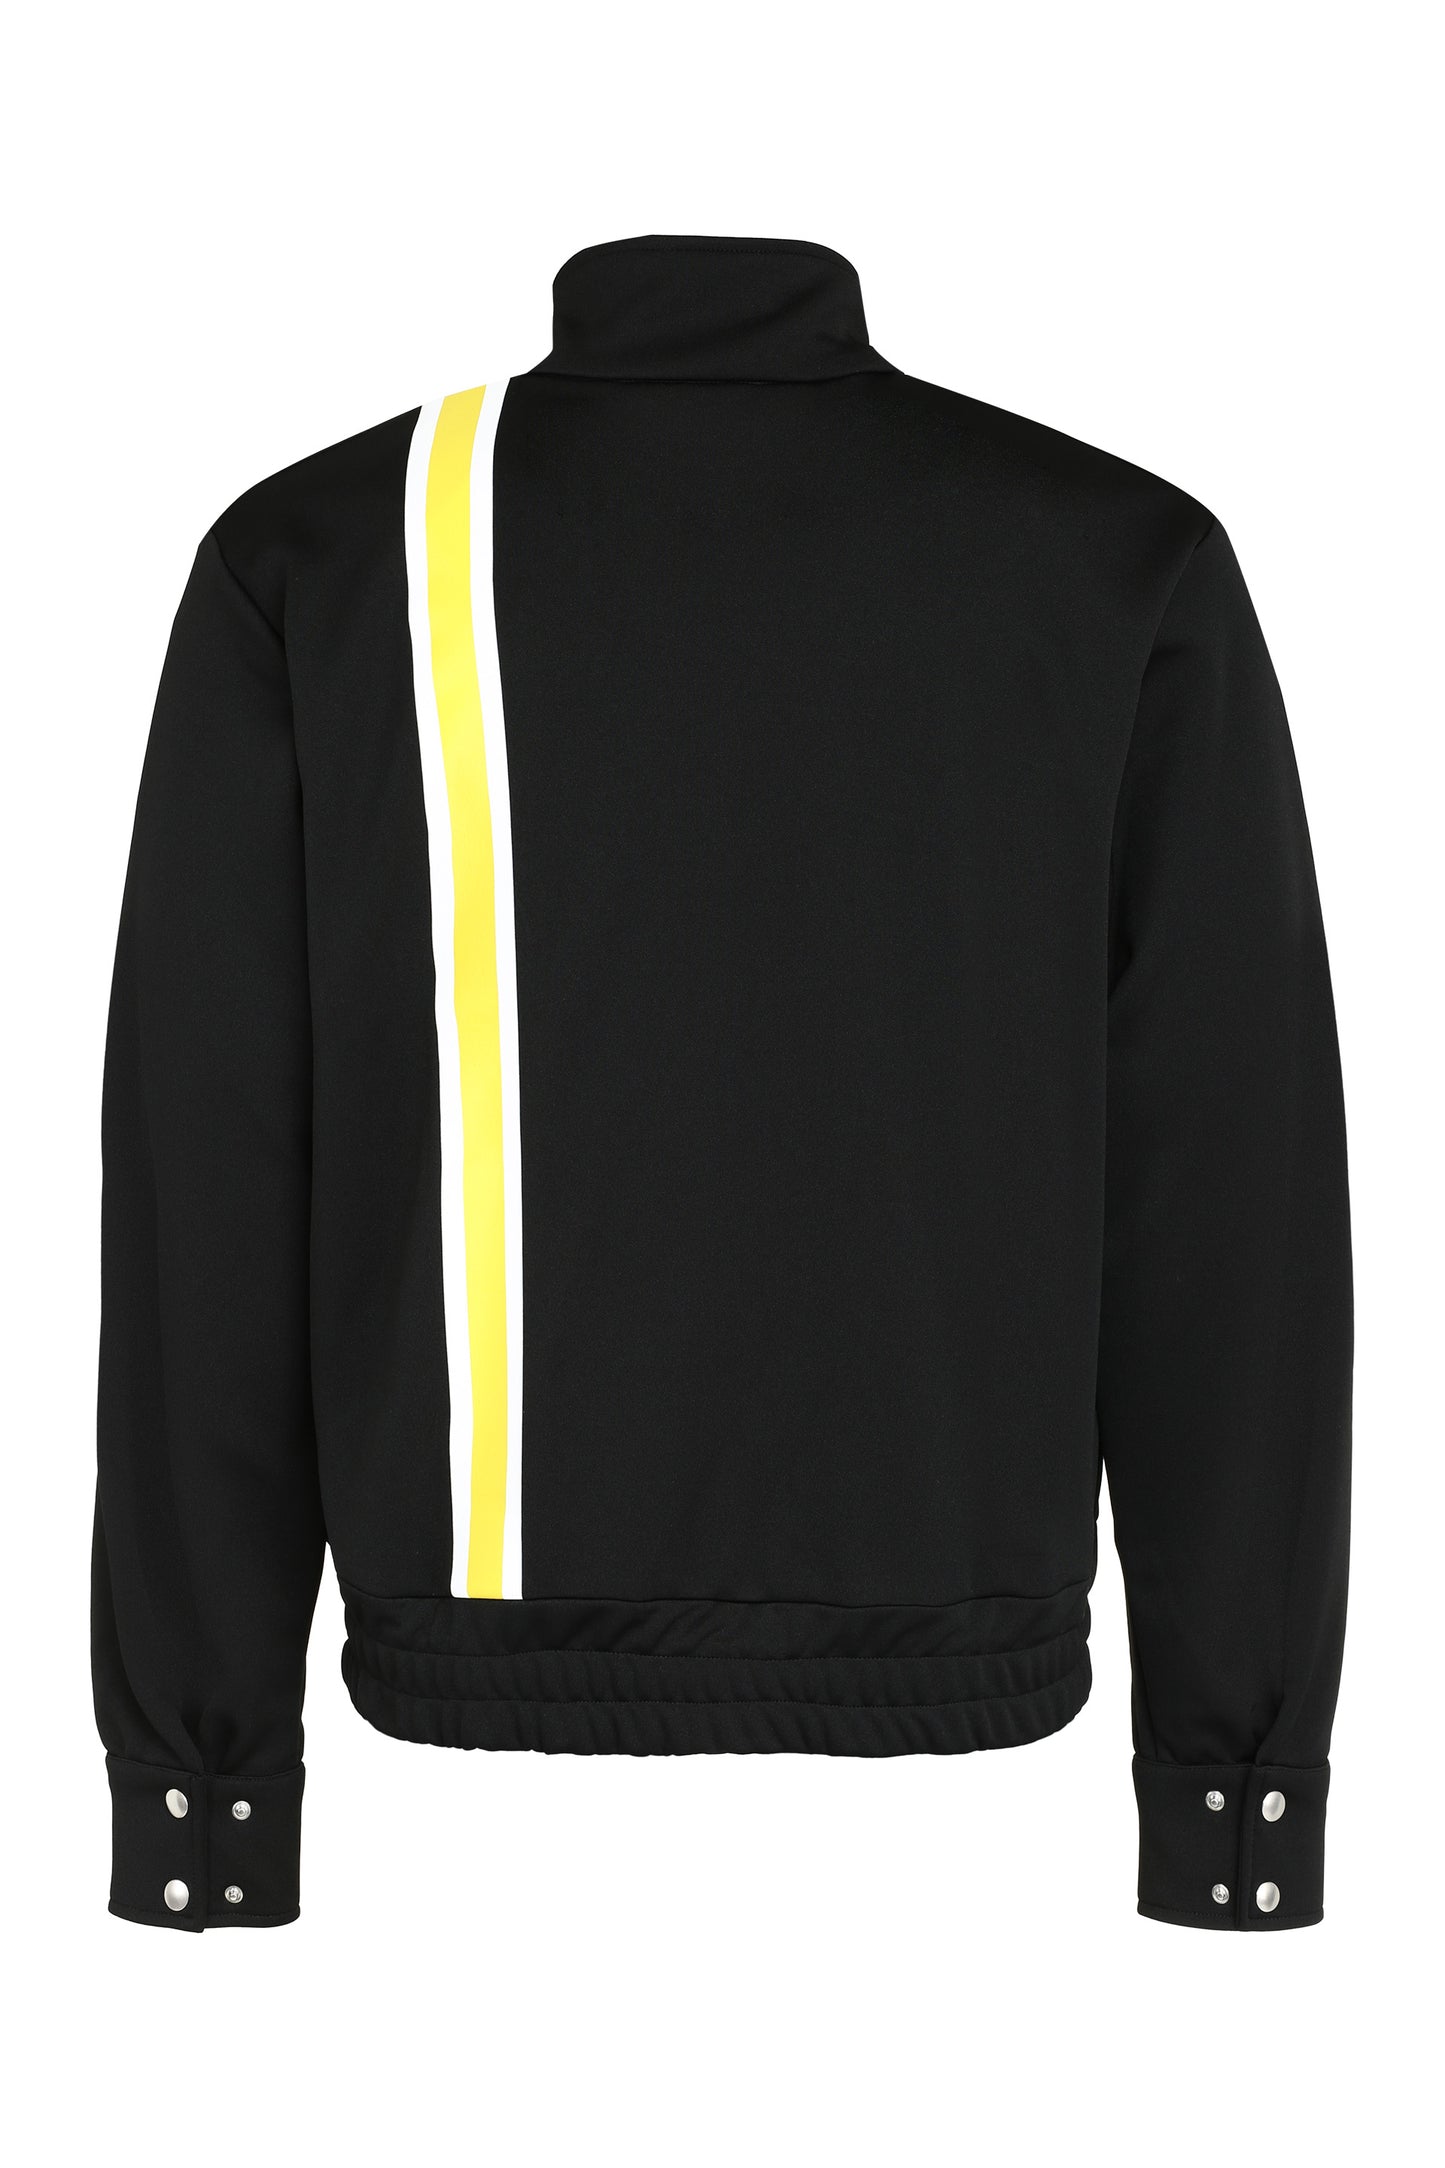 Techno fabric full-zip sweatshirt